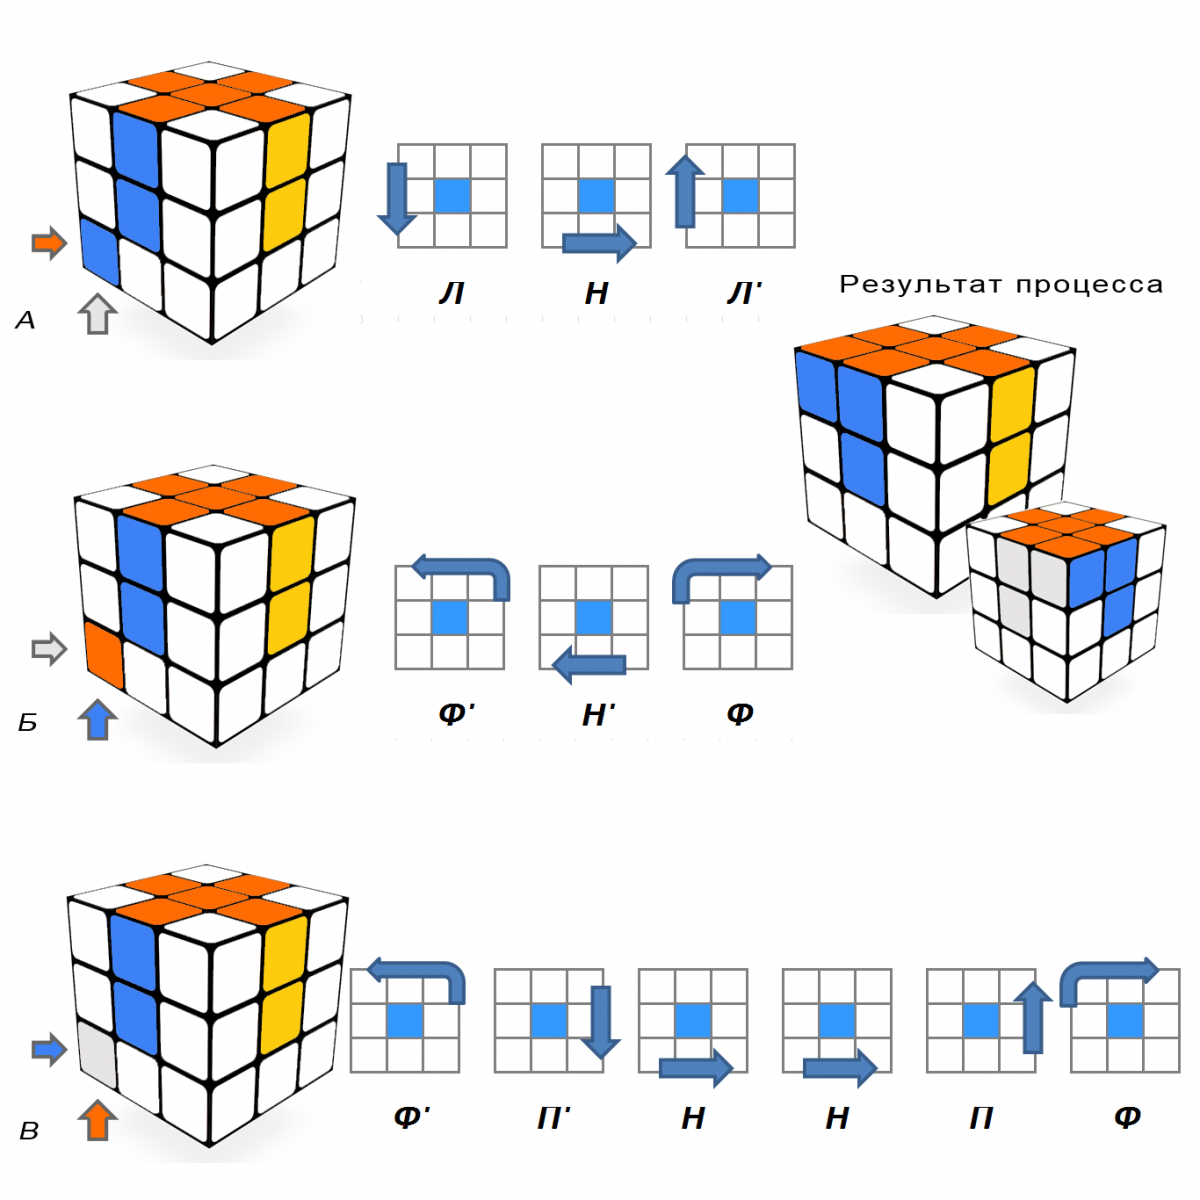 Как собрать кубик рубика видео для начинающих. Алгоритм кубика Рубика 3х3. Схема сборки кубика Рубика 3х3. Сборка третьего слоя кубика Рубика 3х3. Как собрать кубик Рубика 3 на 3 схема.